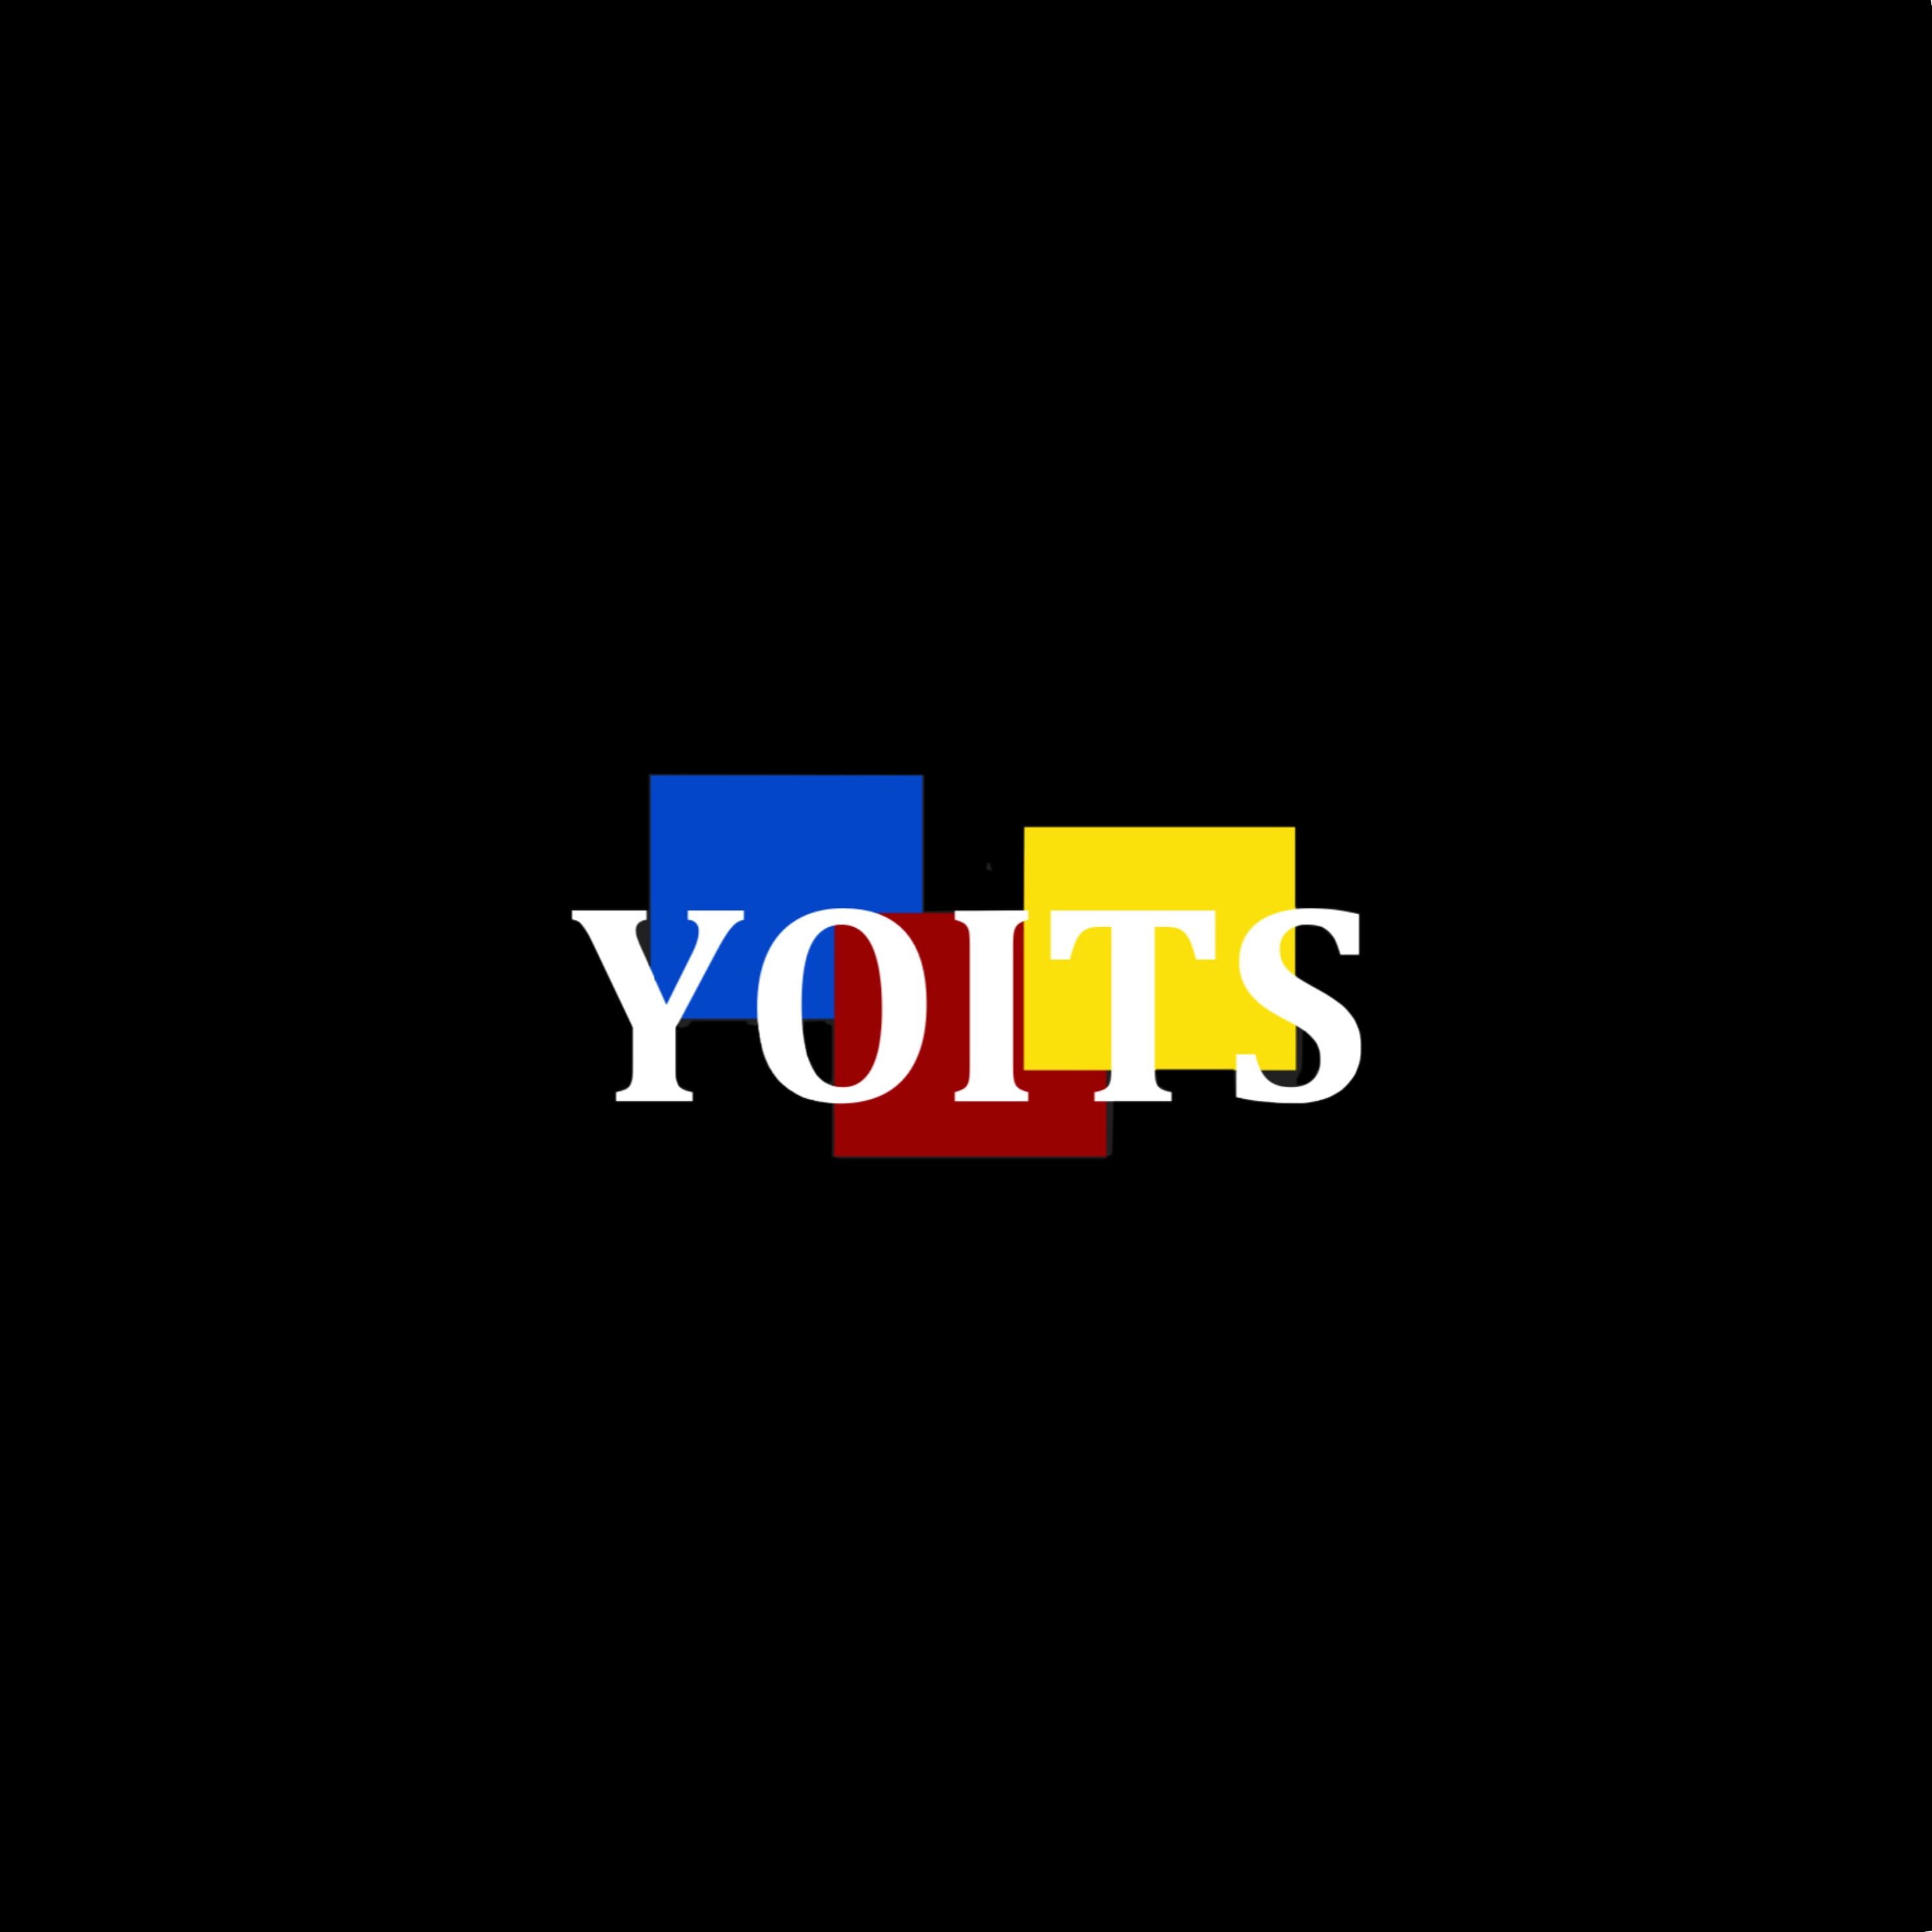 Yolts